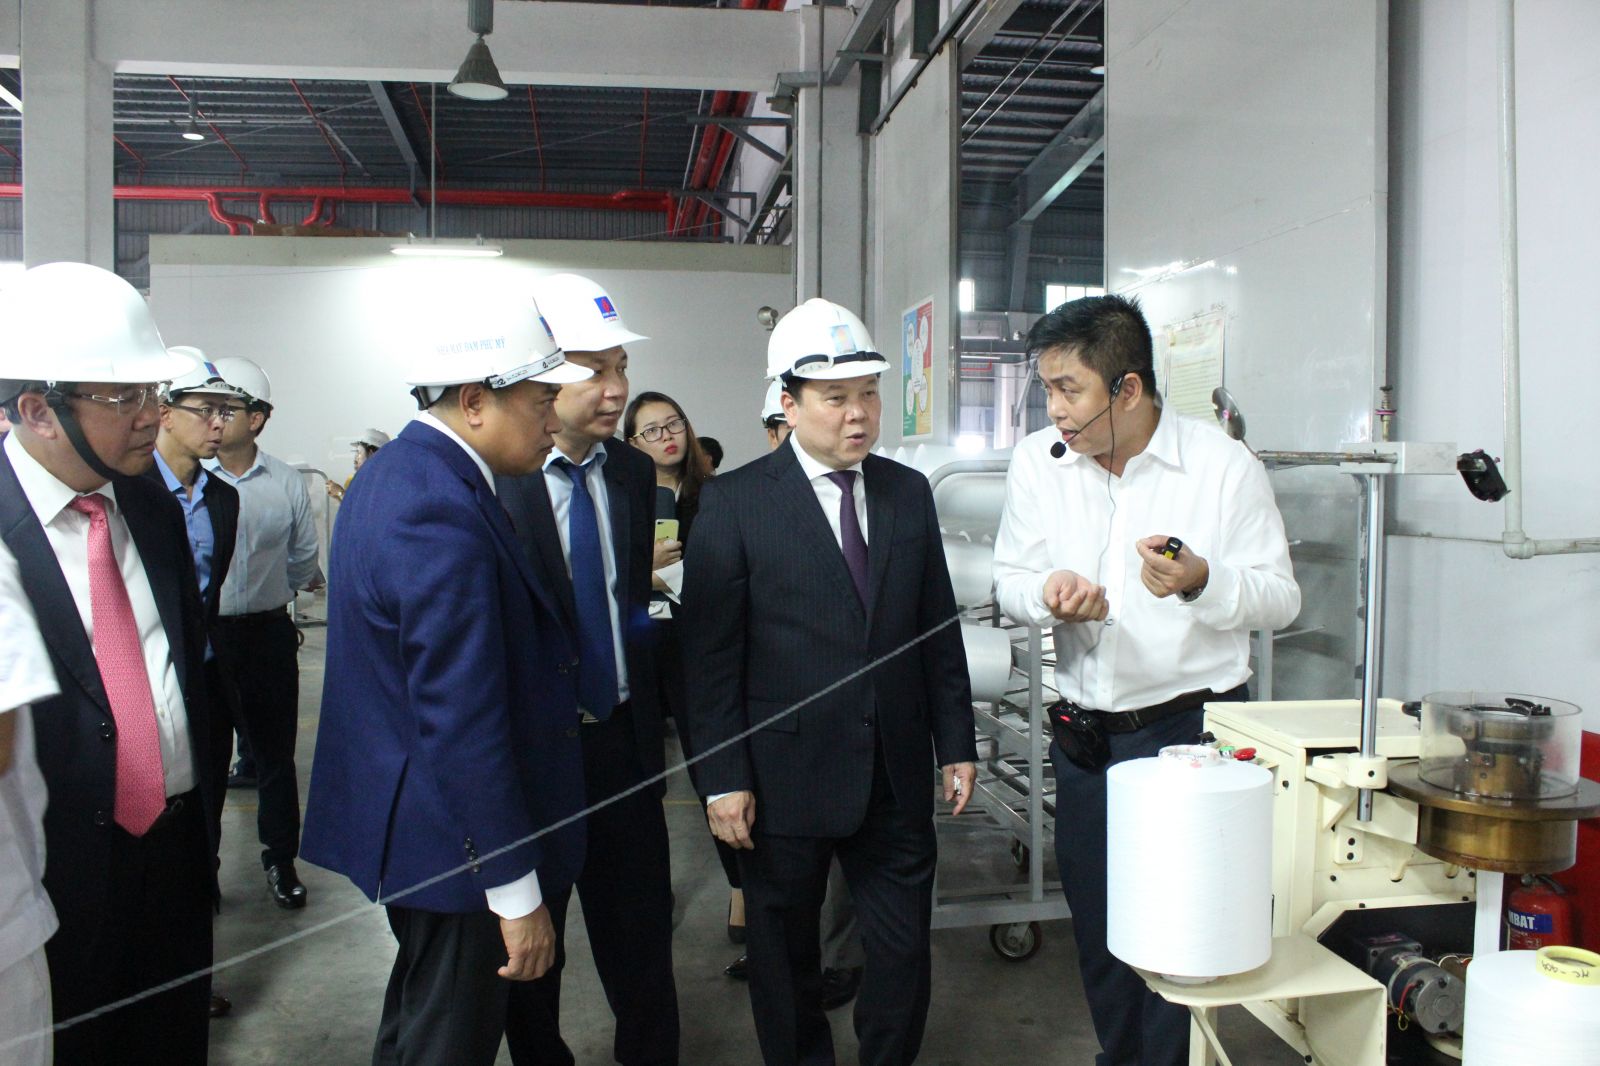 Ông Bùi Việt Hà trên vai trò mới là Phó Tổng GĐ Cty An Sơn (áo trắng) đang giới thiệu về sản phẩm sợi DTY, thành quả hợp tác giữa An Sơn và PVTEX.